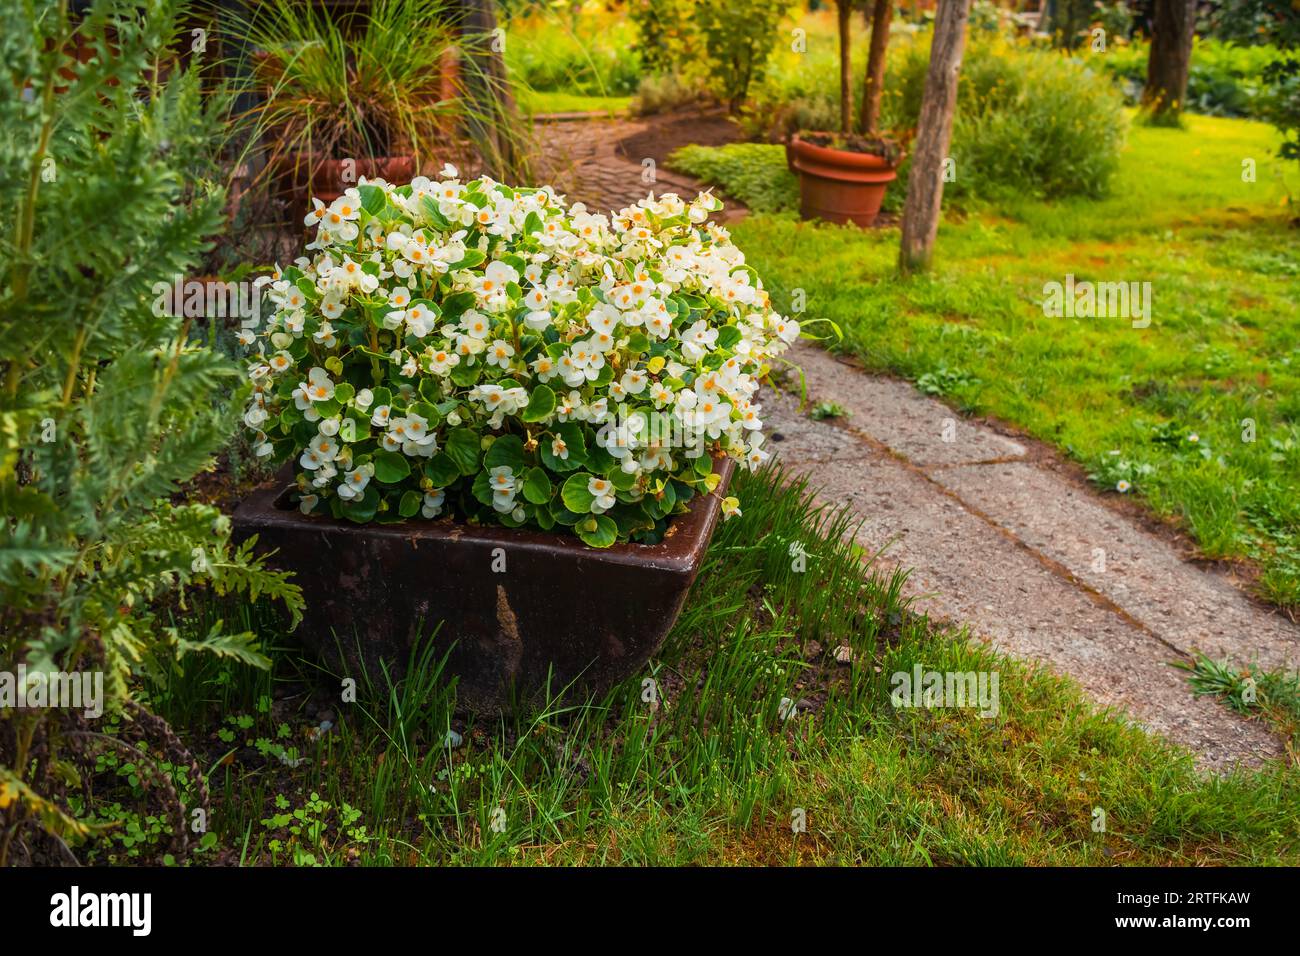 Blumen und Pflanzen in einem Topf mit kleinem Pfad Stockfoto